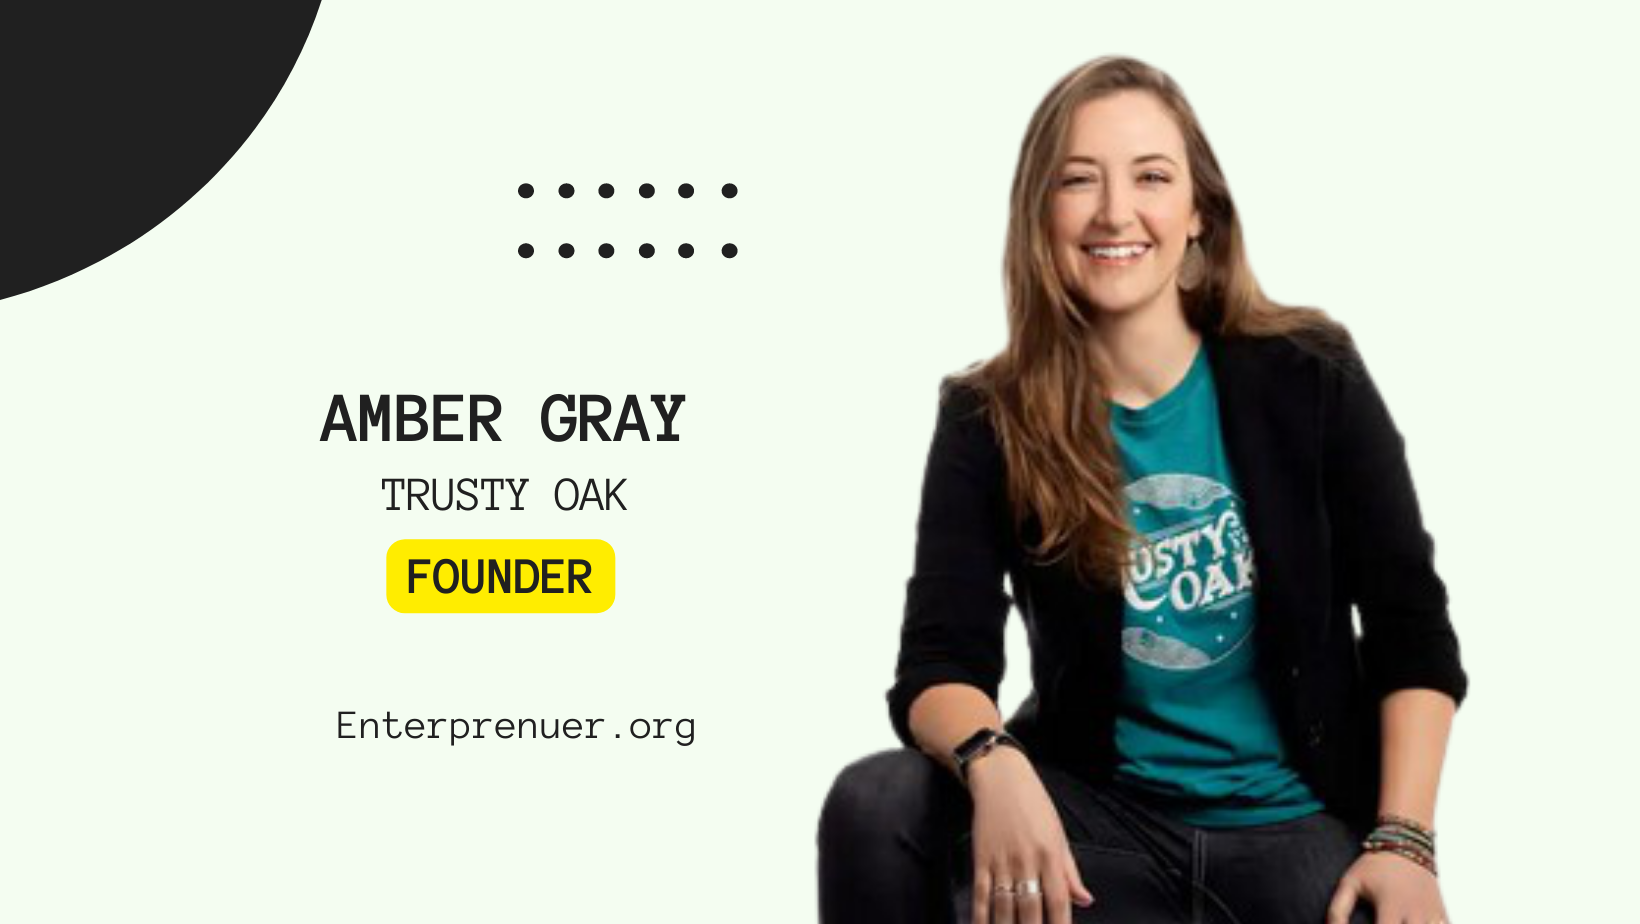 Amber Gray Founder of Trusty Oak